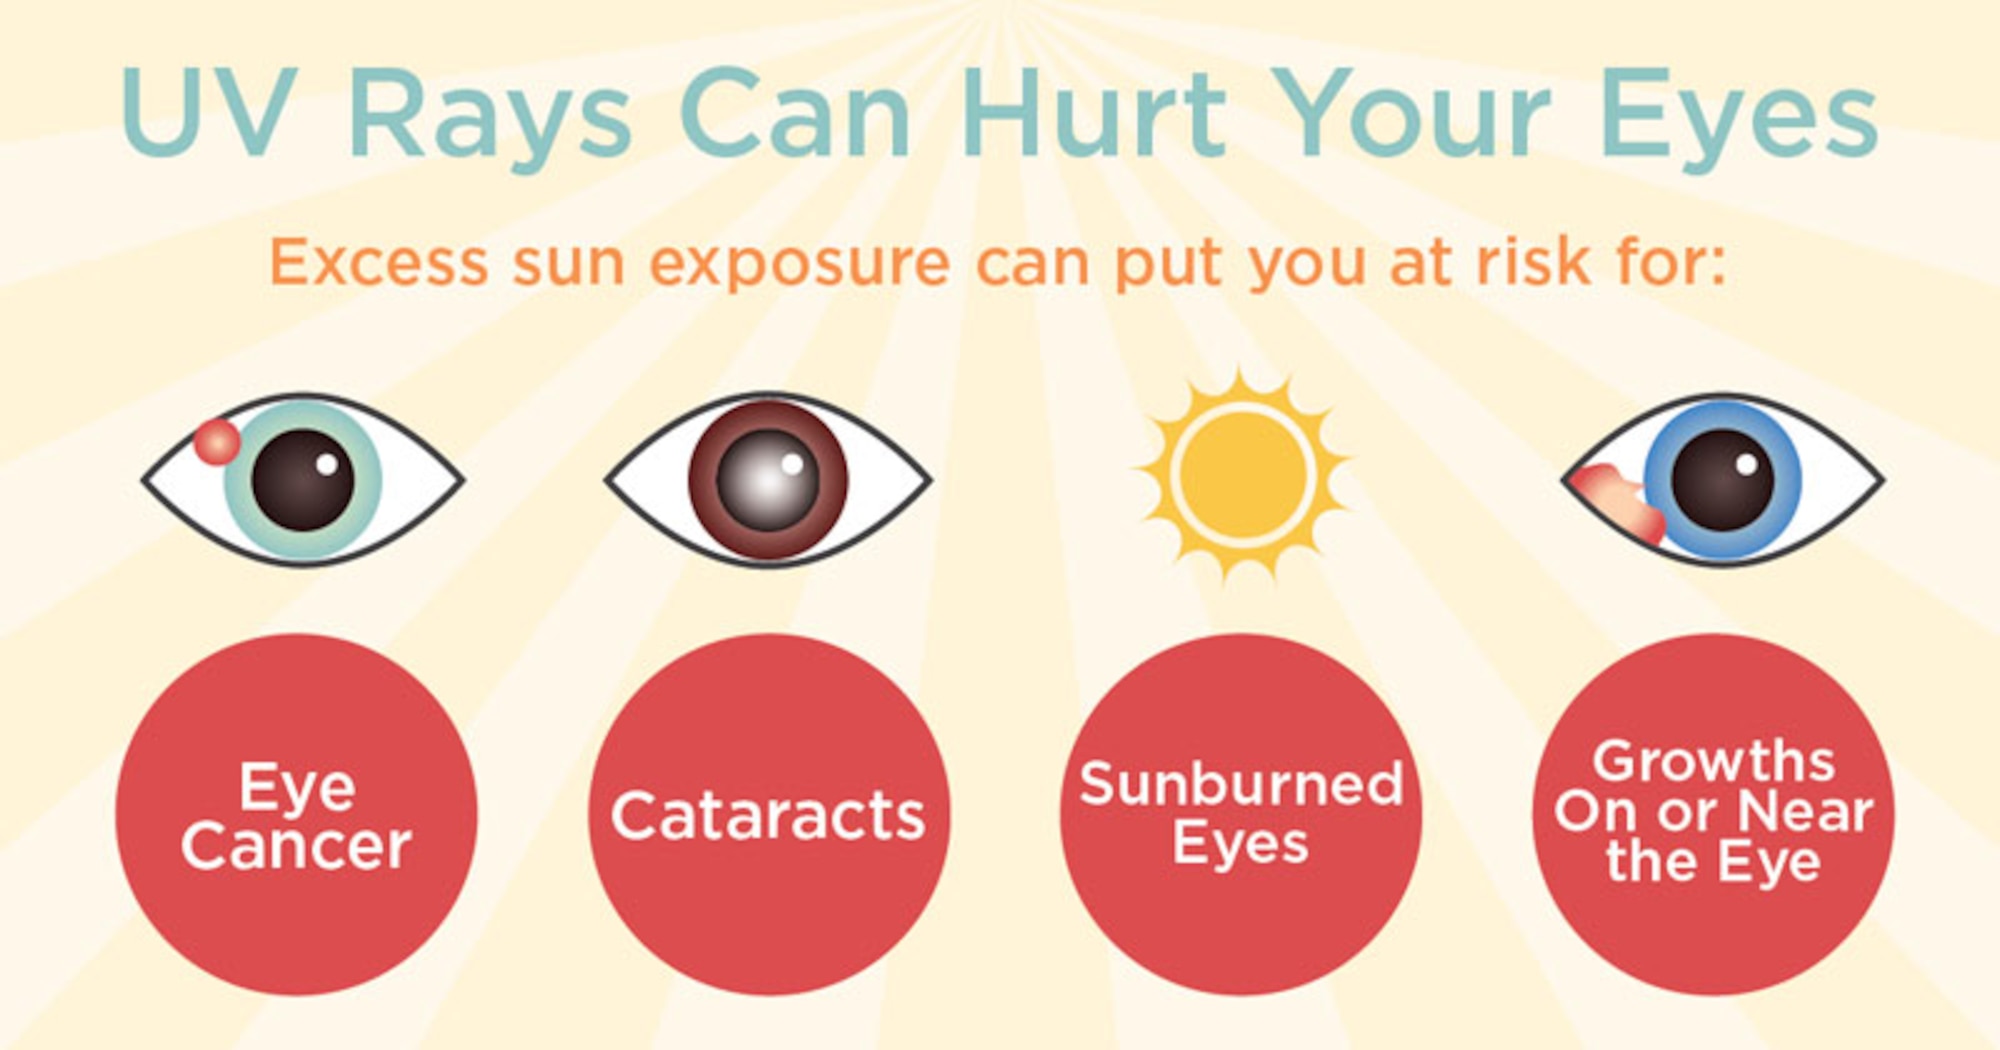 Does UV light harm eyes?